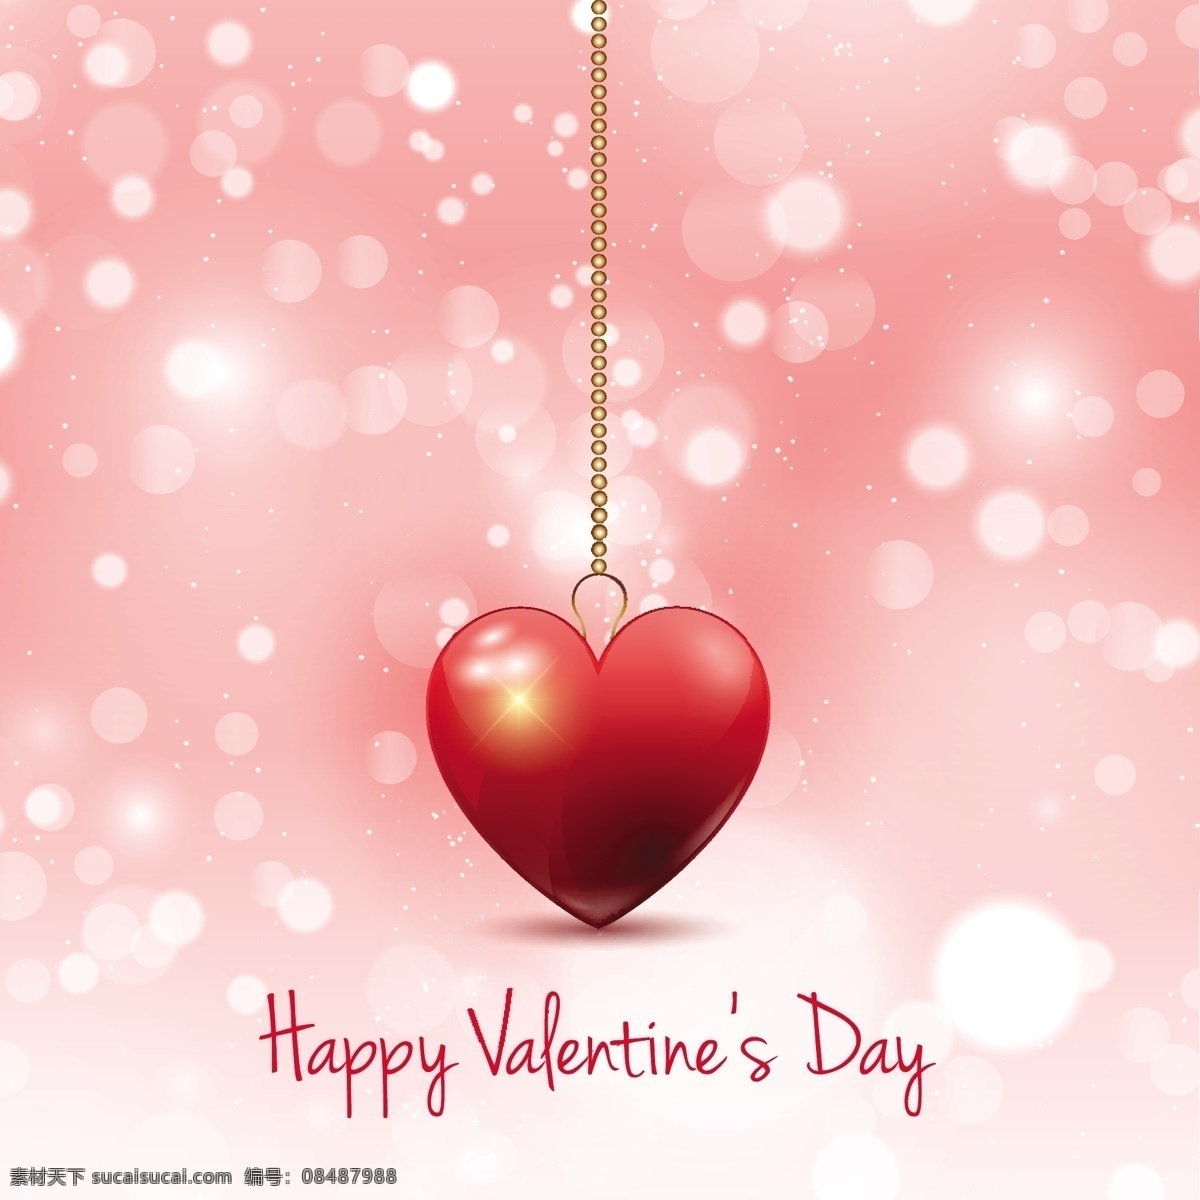 粉红色 背景 心形 吊坠 心脏 卡片 爱情 情人节 庆祝 快乐 情侣 浪漫 美丽 节日 丘比特 问候 二月 年度